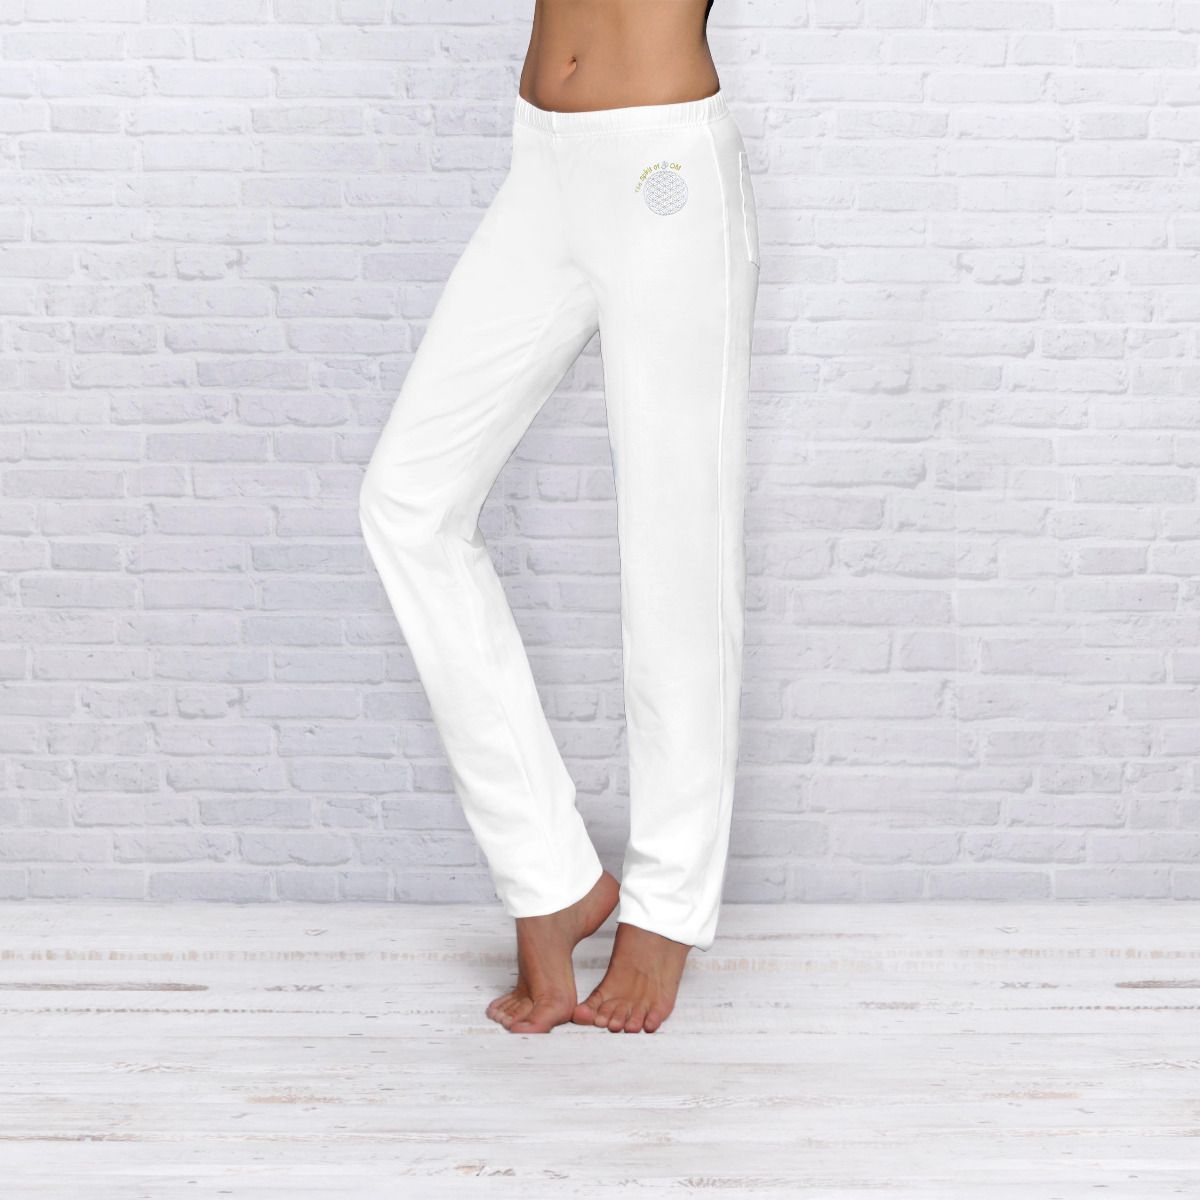 The Spirit of OM wellness kalhoty z bio bavlny dlouhé unisex - bílé Velikost: M